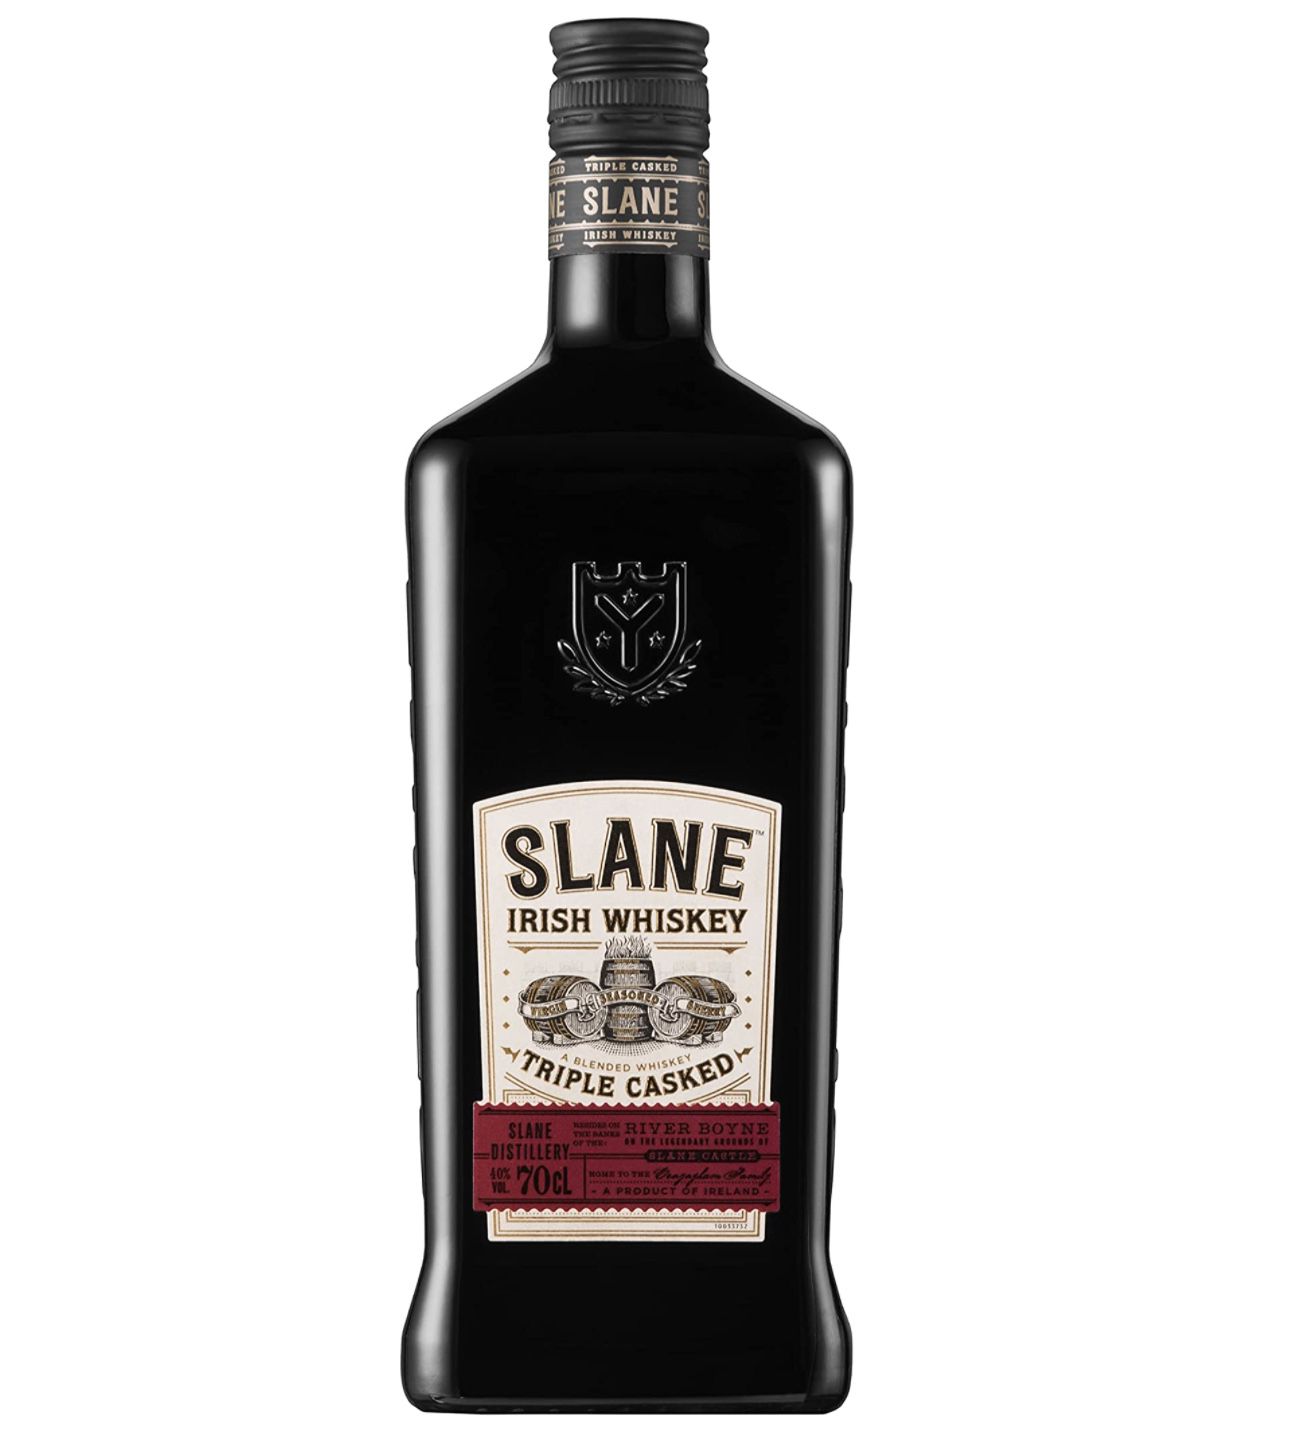 SLANE Irish Whiskey   3 fach fassgereift für besonderen Charakter für 19,99€ (statt 26€)   Prime